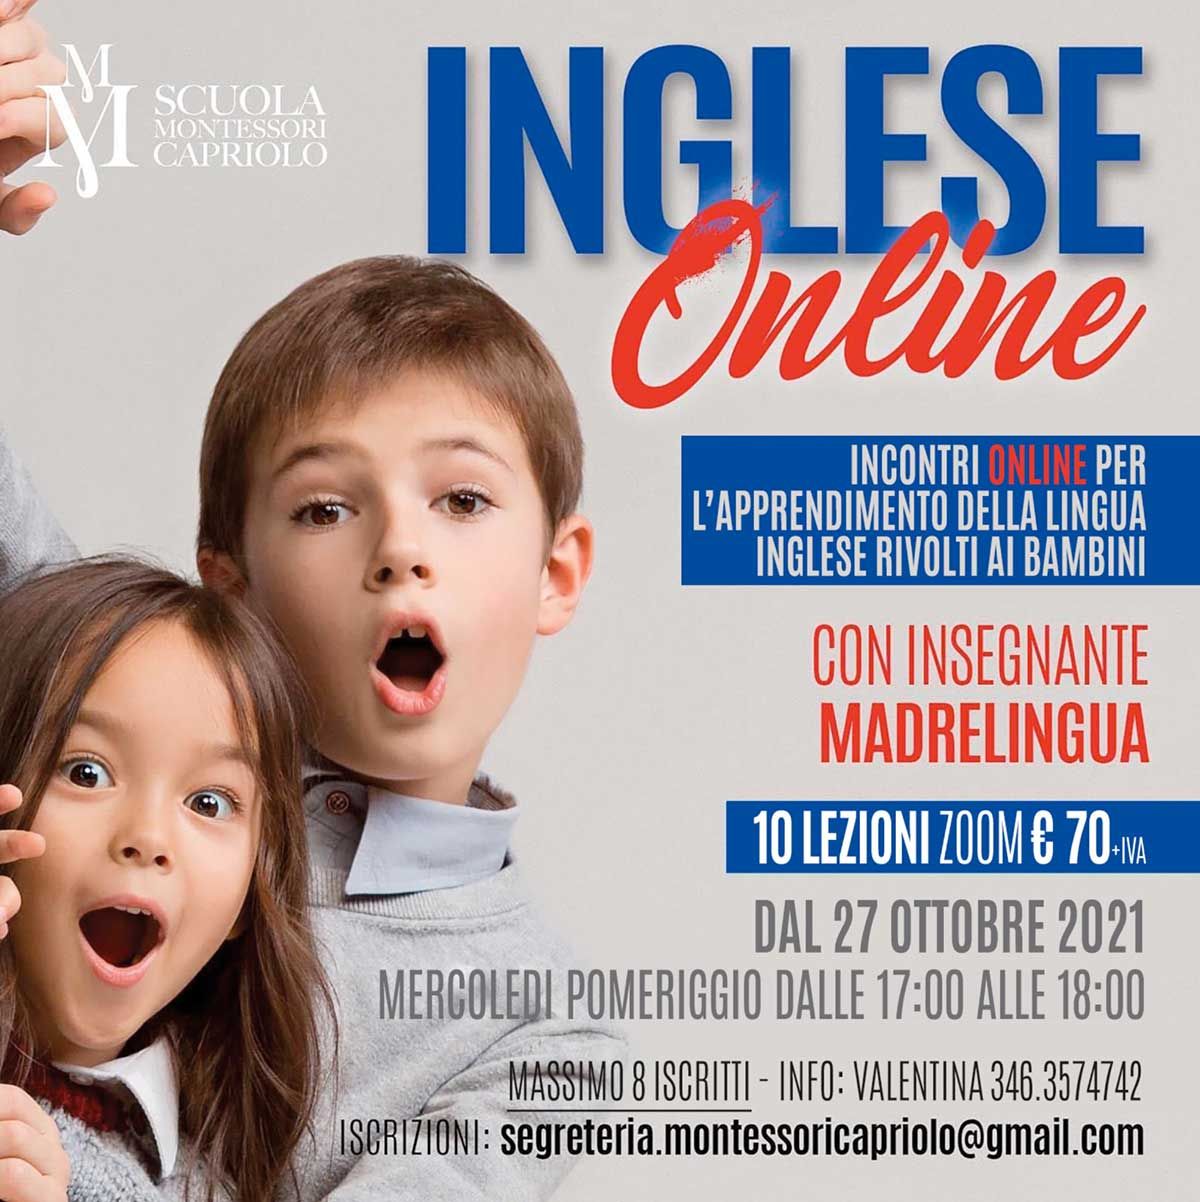 corso-inglese-online-per-bambini-con-madrelingua-montessori-capriolo-2021